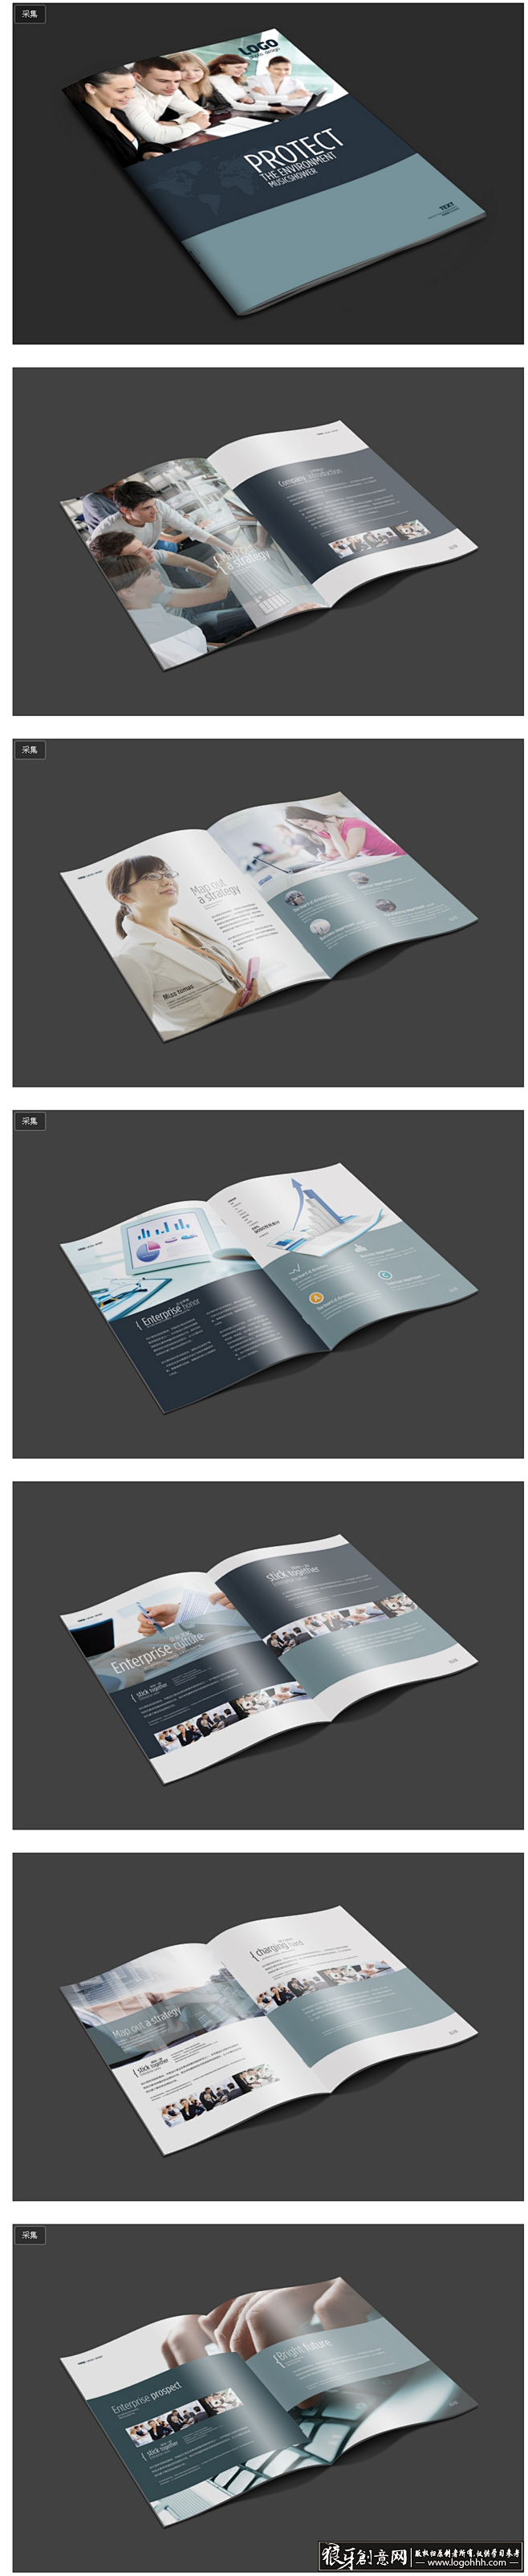 [创意画册] 简洁时尚企业宣传杂志设计 ...